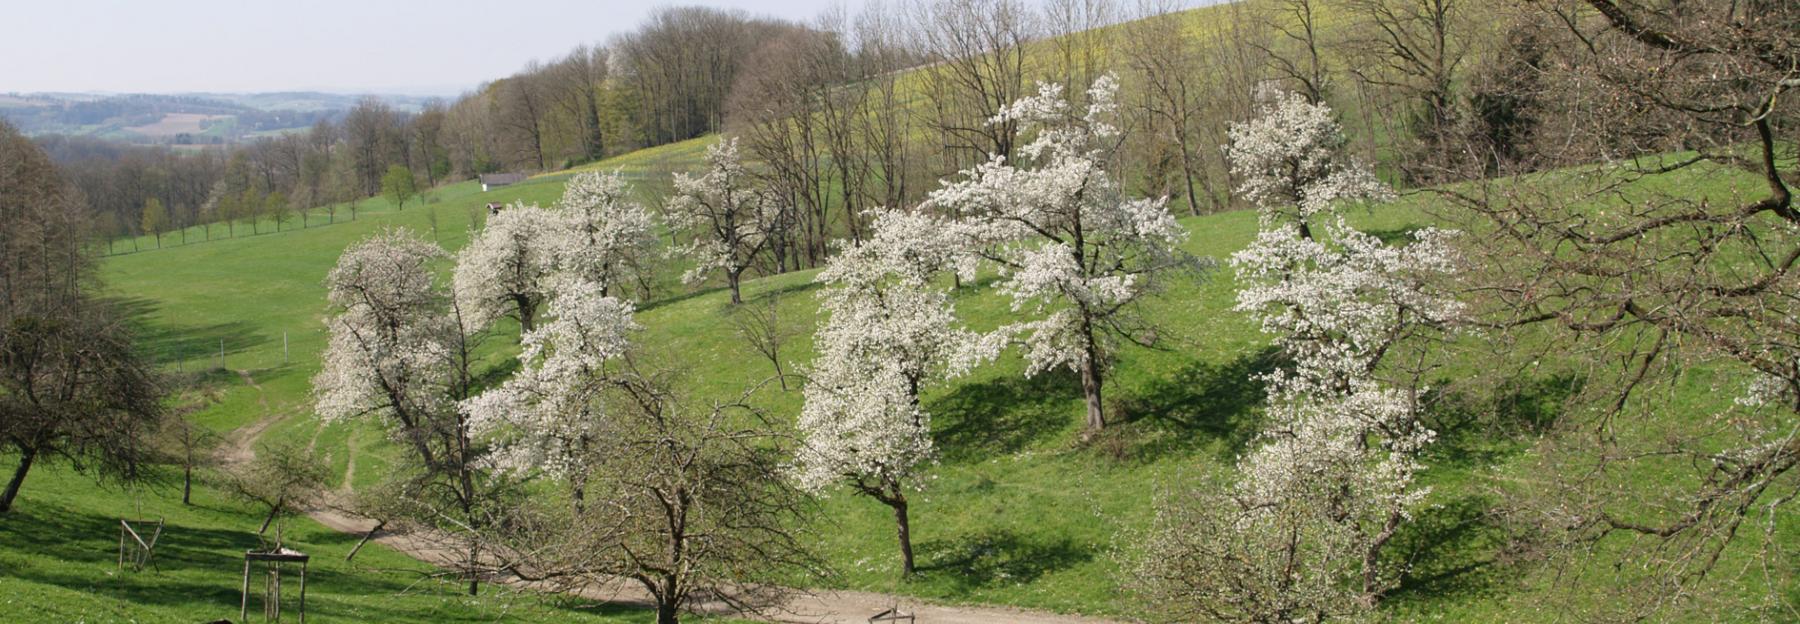 Streuobstwiese im Naturpark Obst-Hügel-Land mit blühenden Kirschbäumen